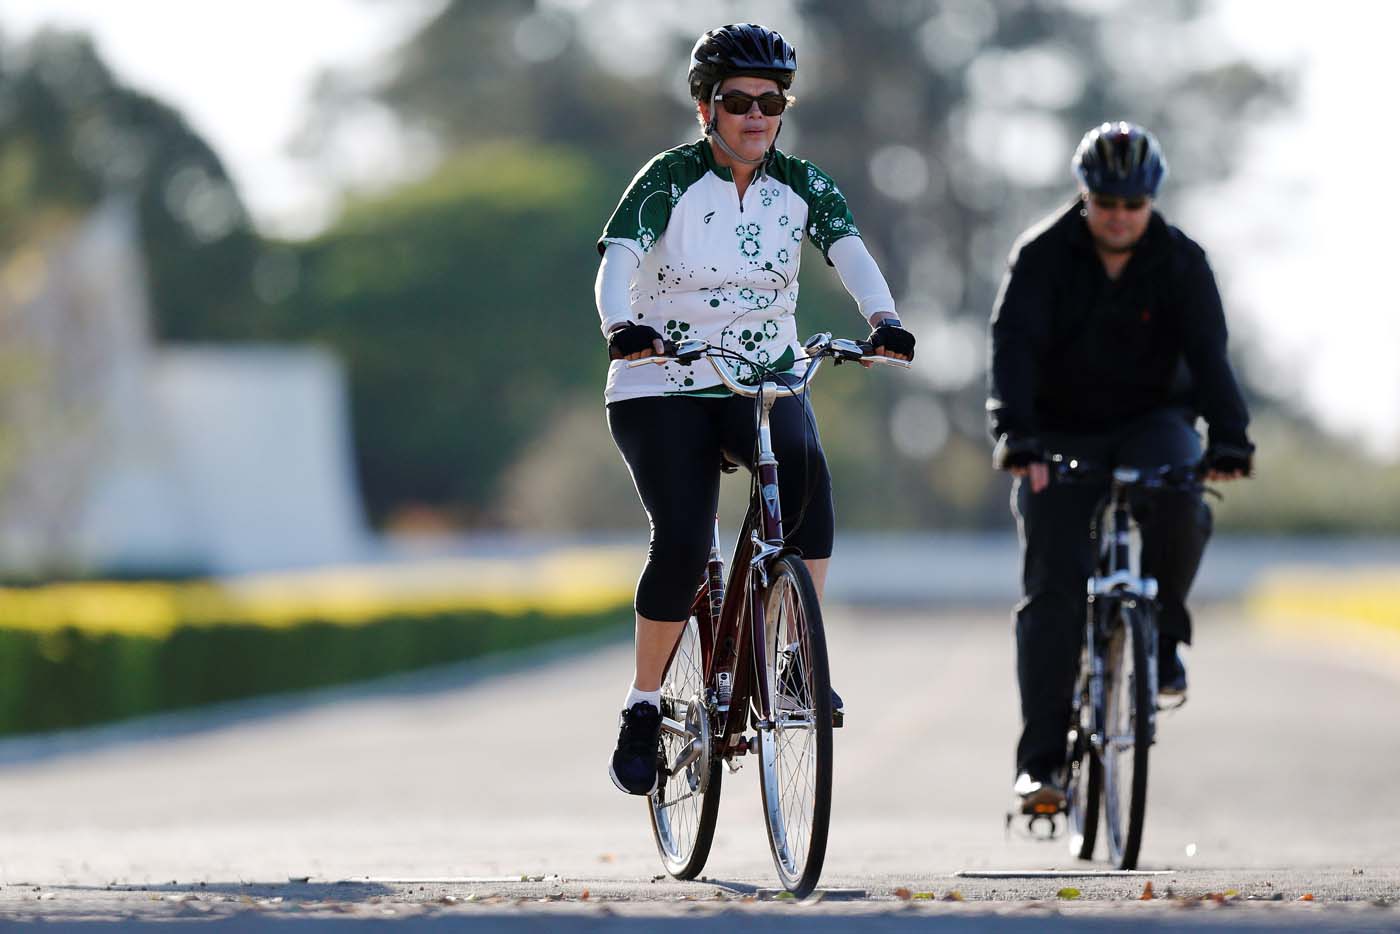 Dilma paseó en bicicleta mientras llega el juicio final